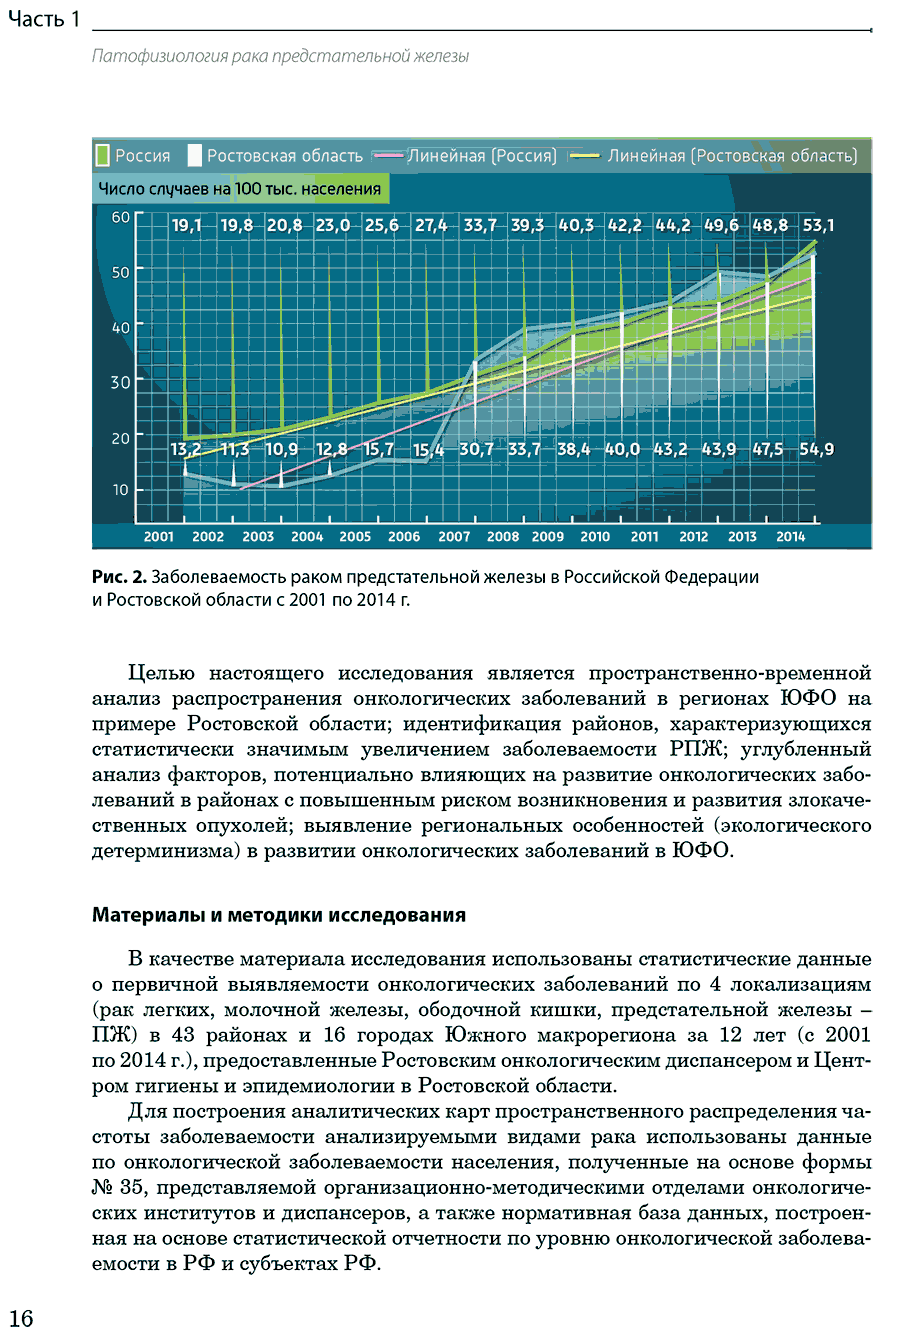 Рис. 2. Заболеваемость раком предстательной железы в Российской Федерации